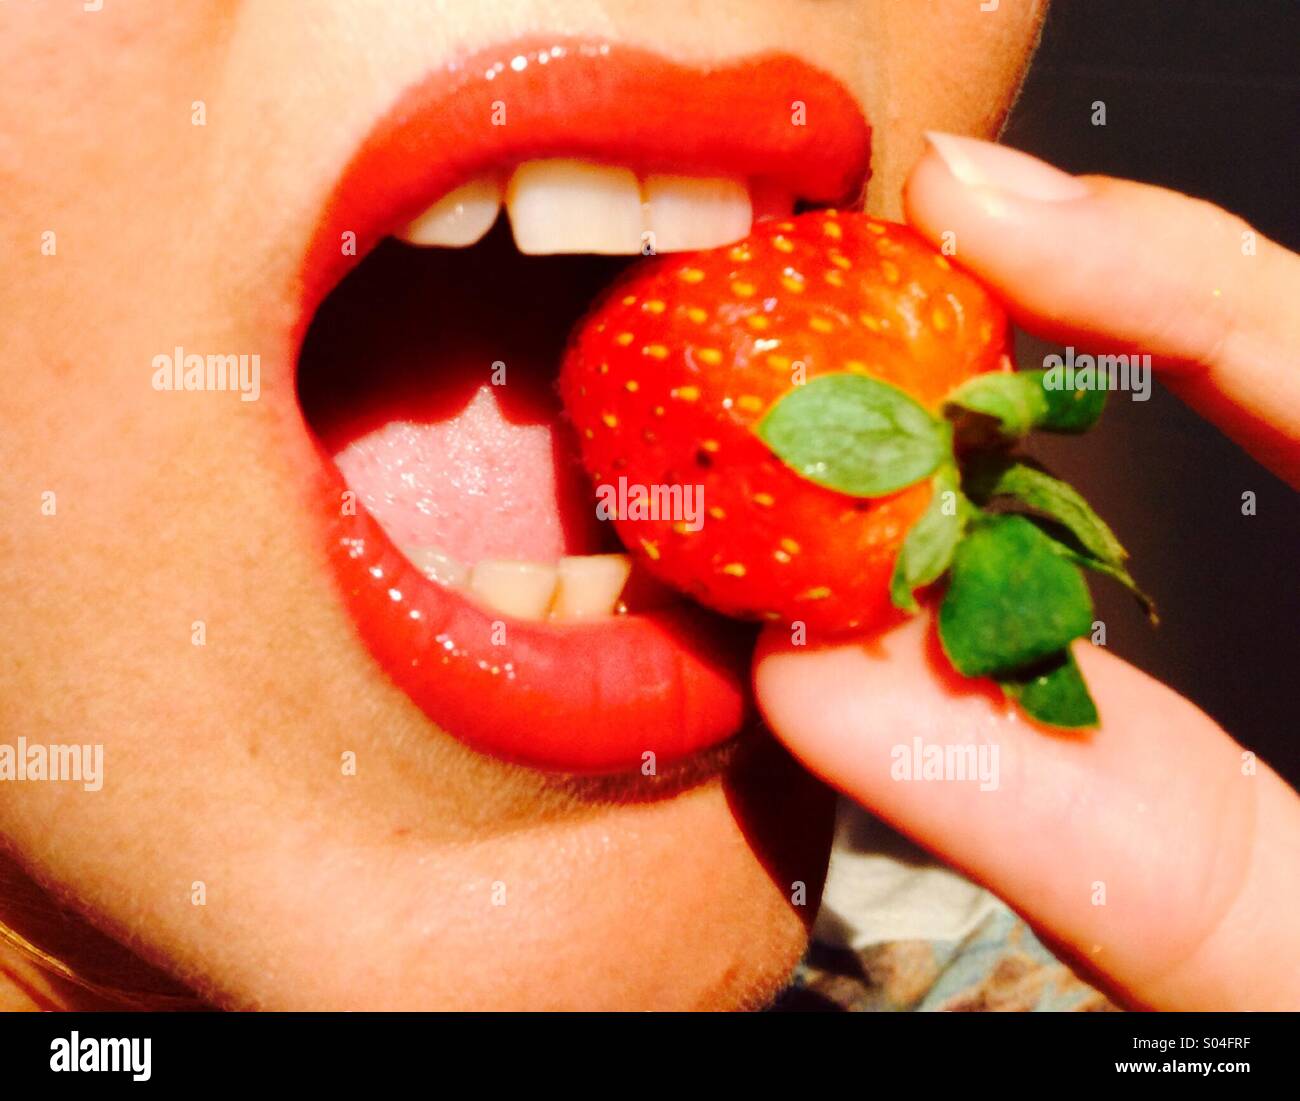 Être piqué de fraises entre les lèvres rouge Banque D'Images